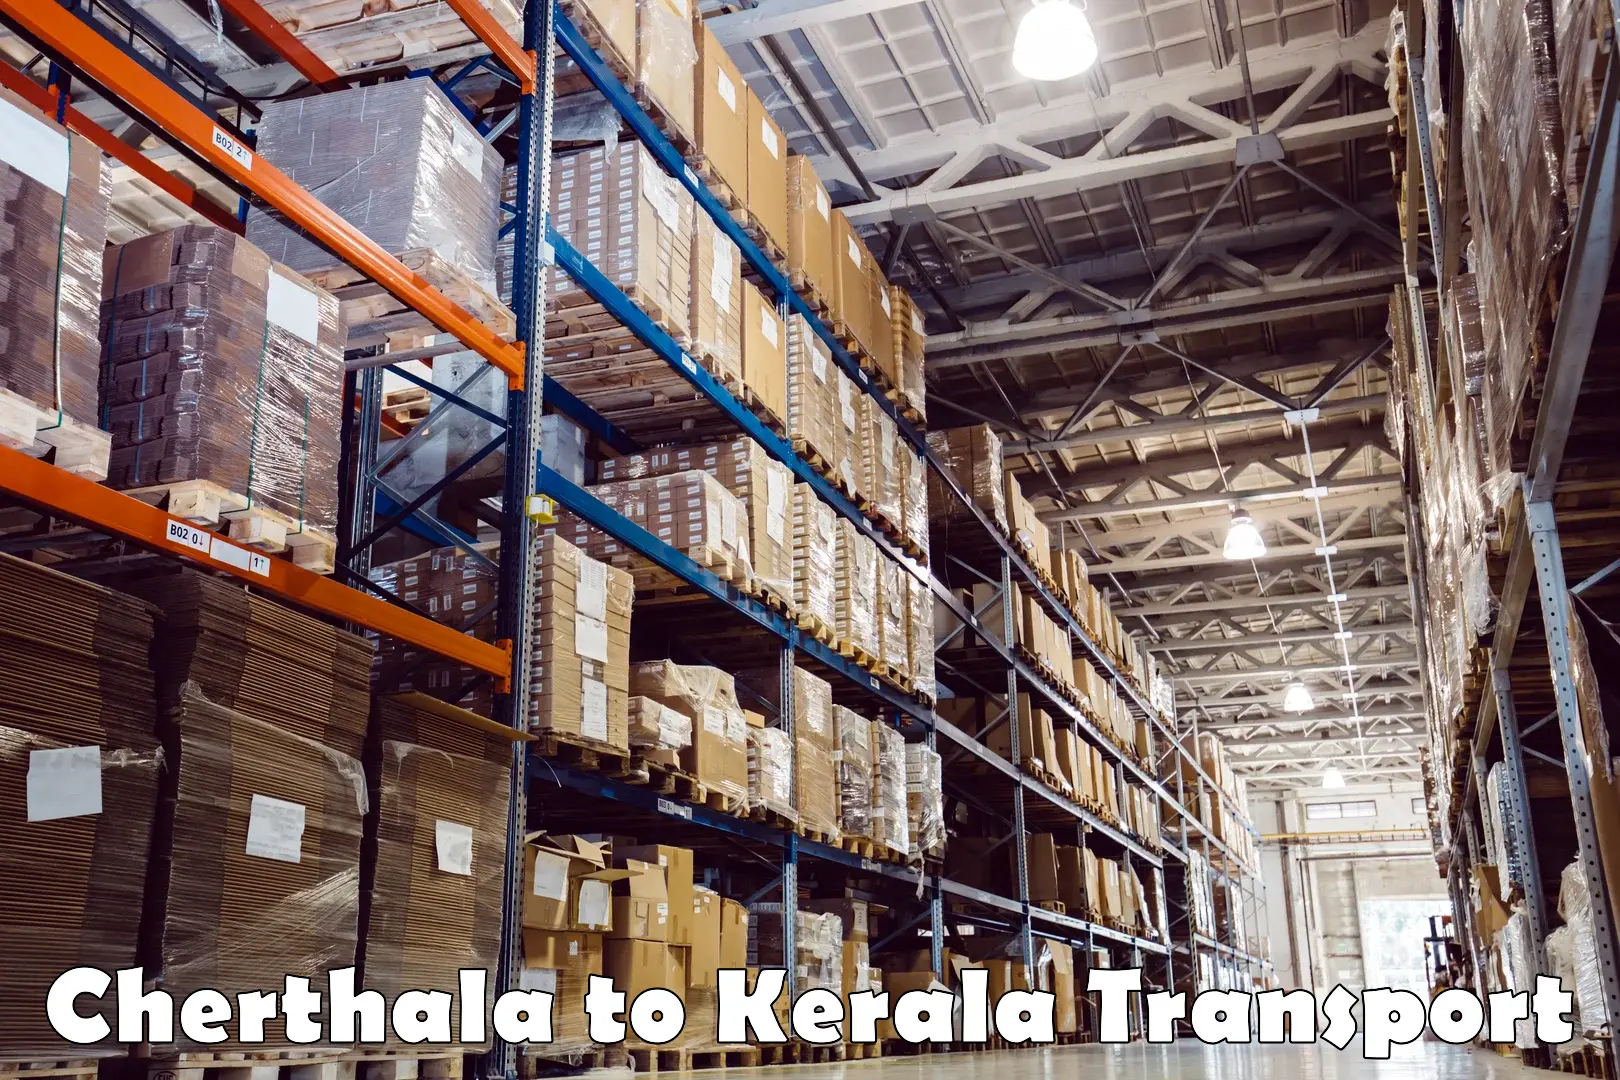 Bike transfer Cherthala to Kerala